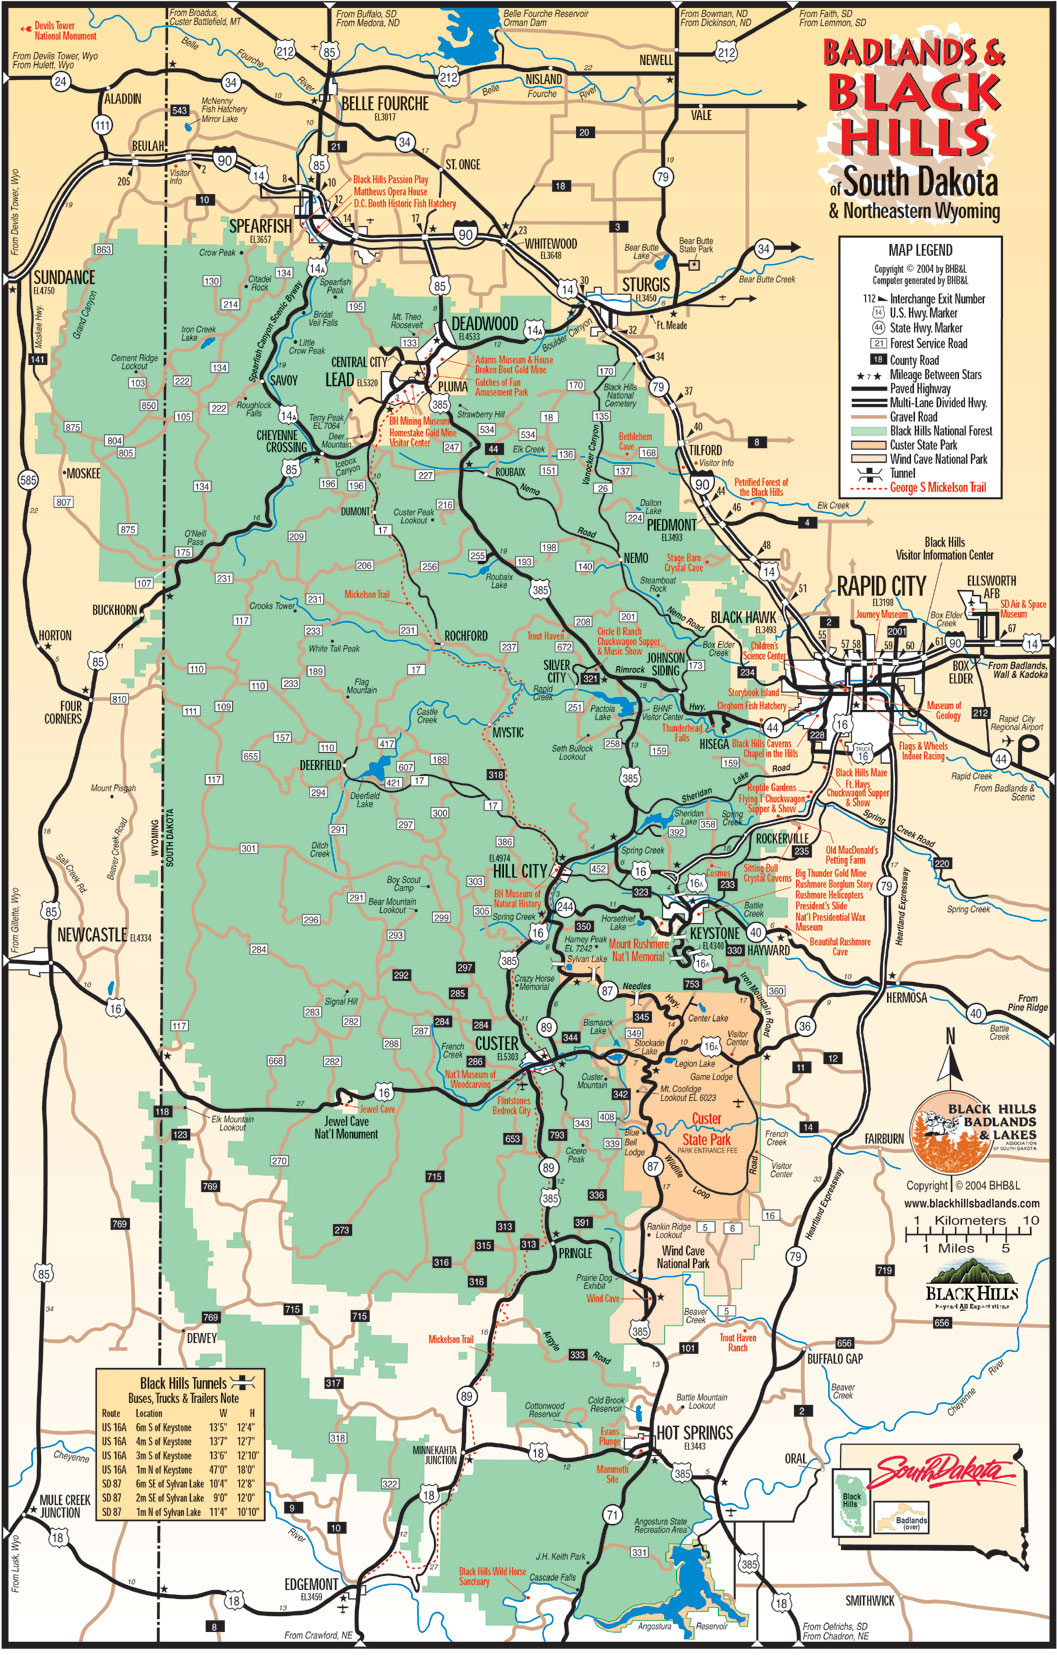 South Dakota Mount Rushmore Map